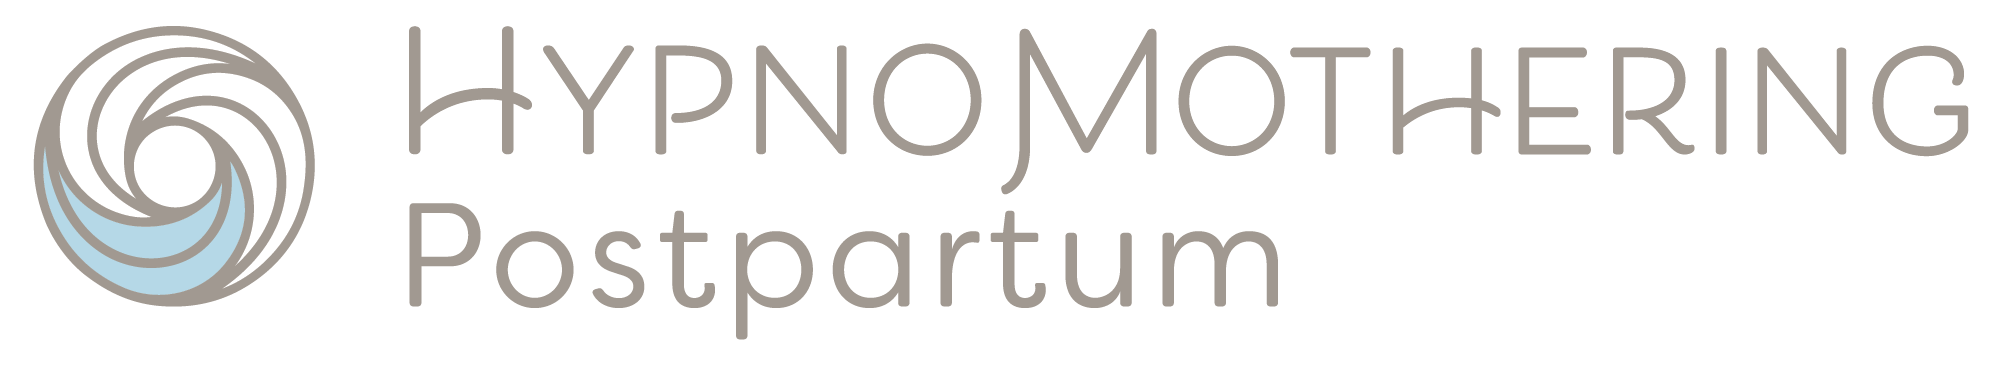 Hypnomothering Postpartum Logo